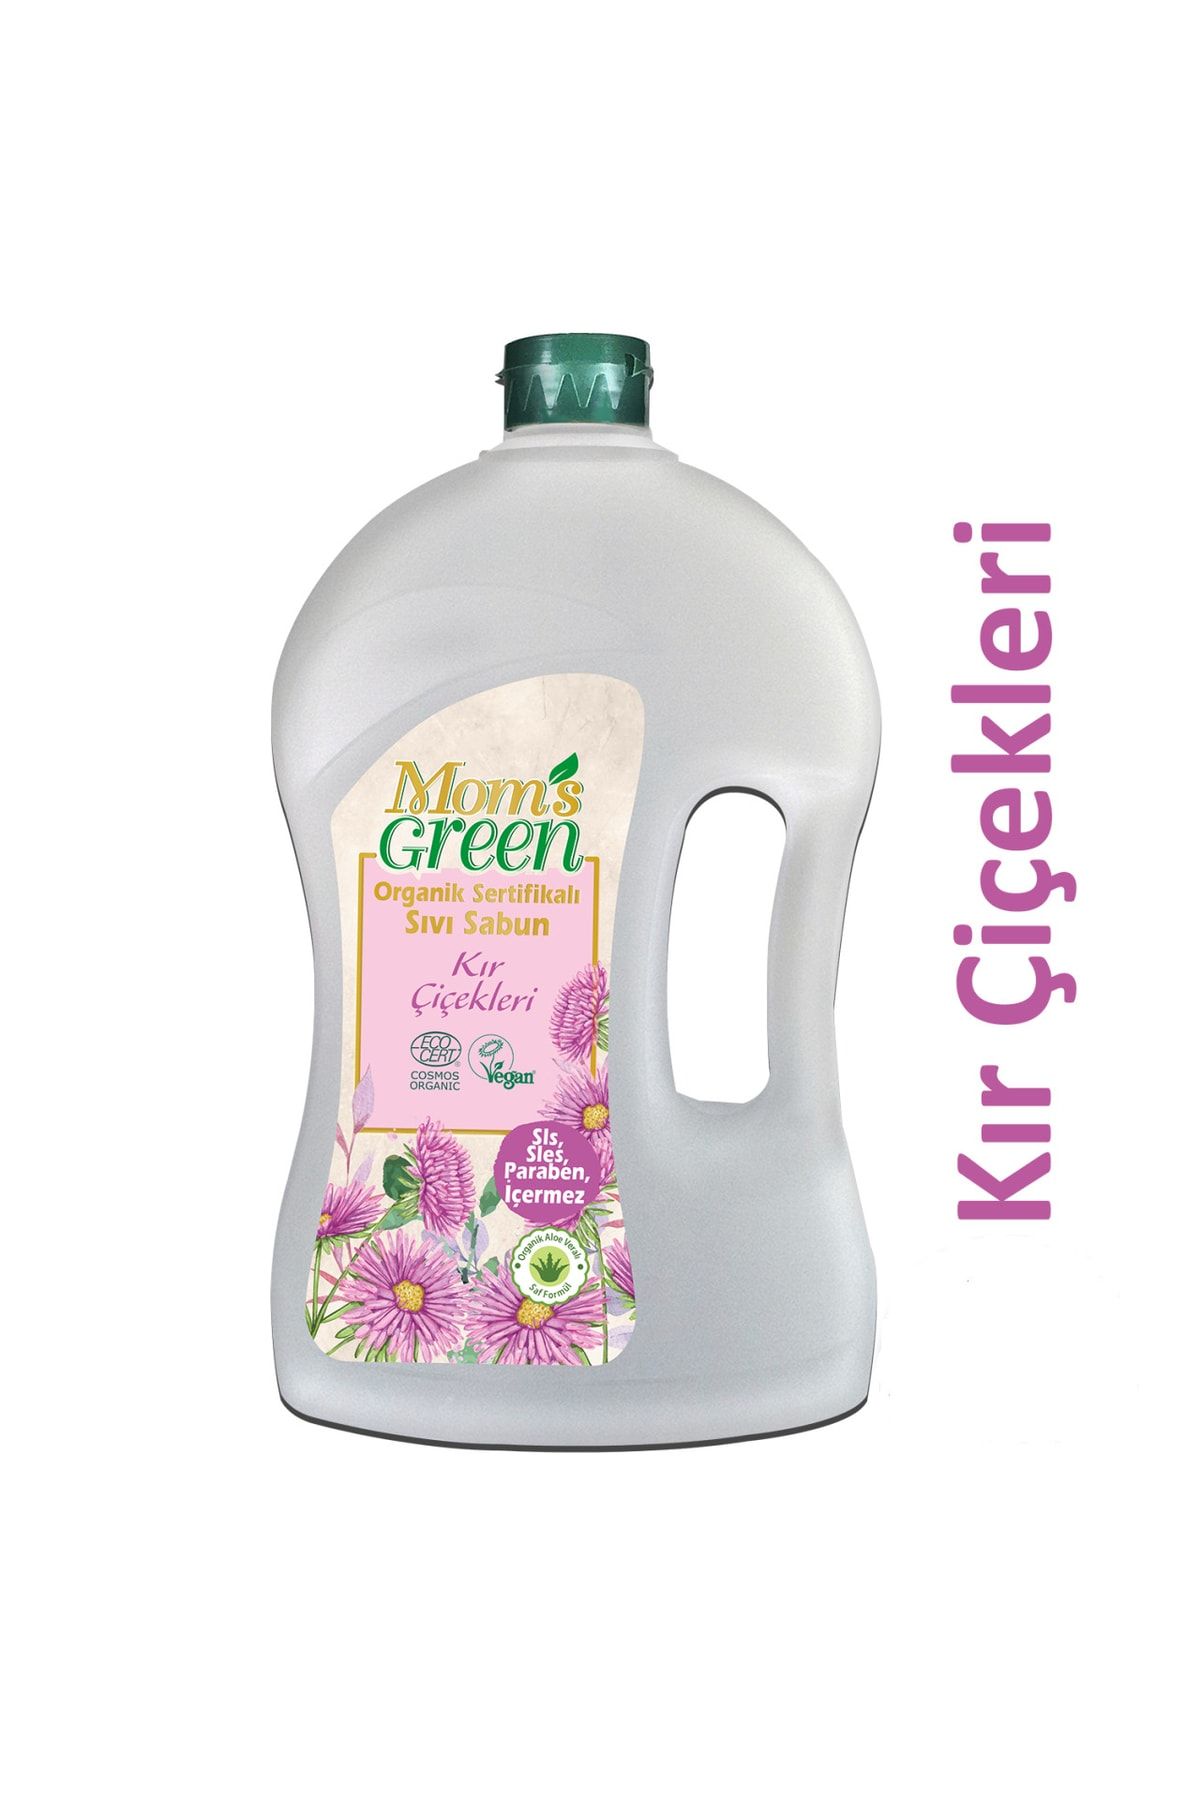 Mom's Green Organik Sertifikalı Sıvı Sabun Kır Çiçekleri 1500 ml Ecocert Cosmos